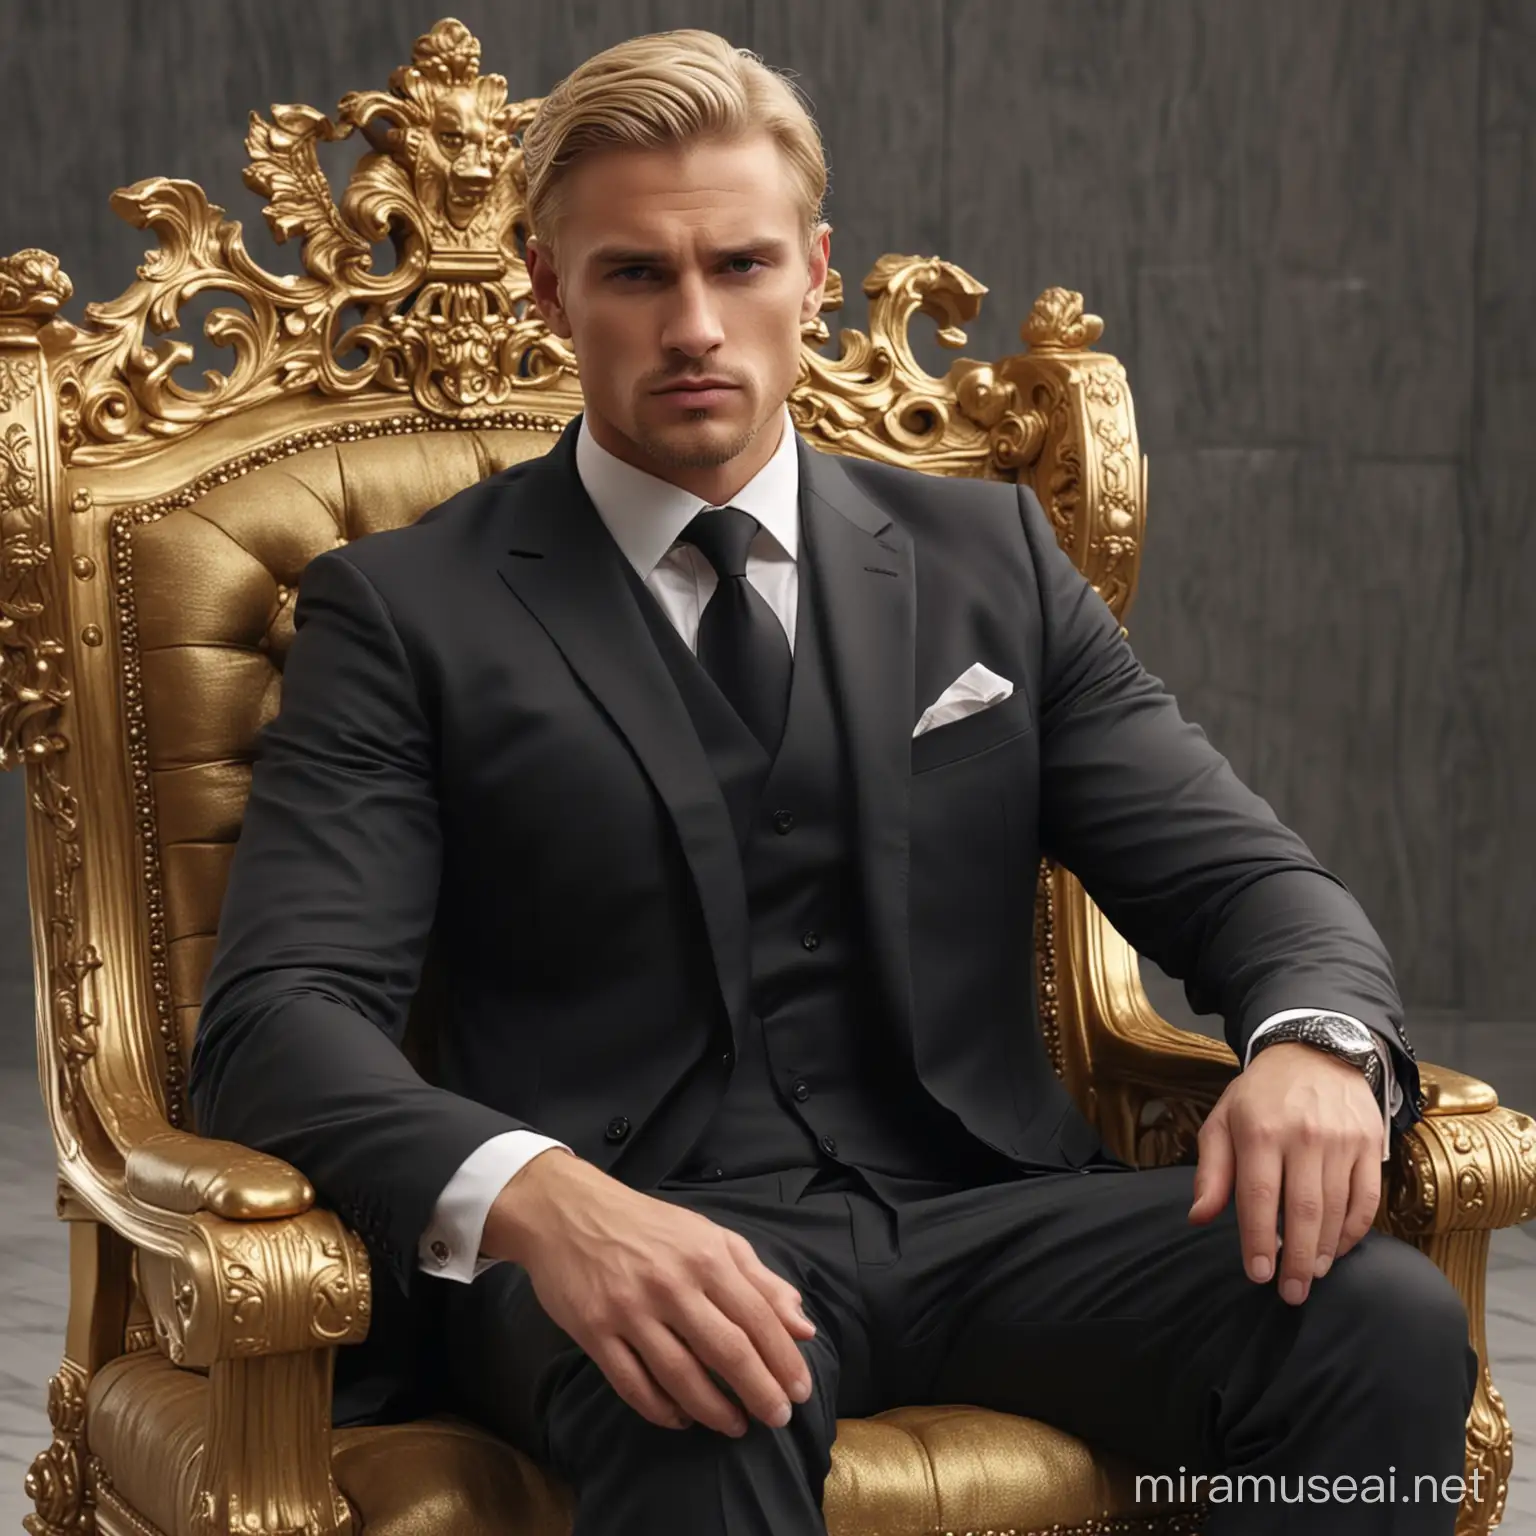 Красивый блондин брутальный мужчина в костюме. Он сидит на троне. Золото. Четкие контуры. кабинет, сидеть. Высокое качество, 8K Ultra HD, Любовь, Высокое качество, Высокая детализация, 8K Ultra HD